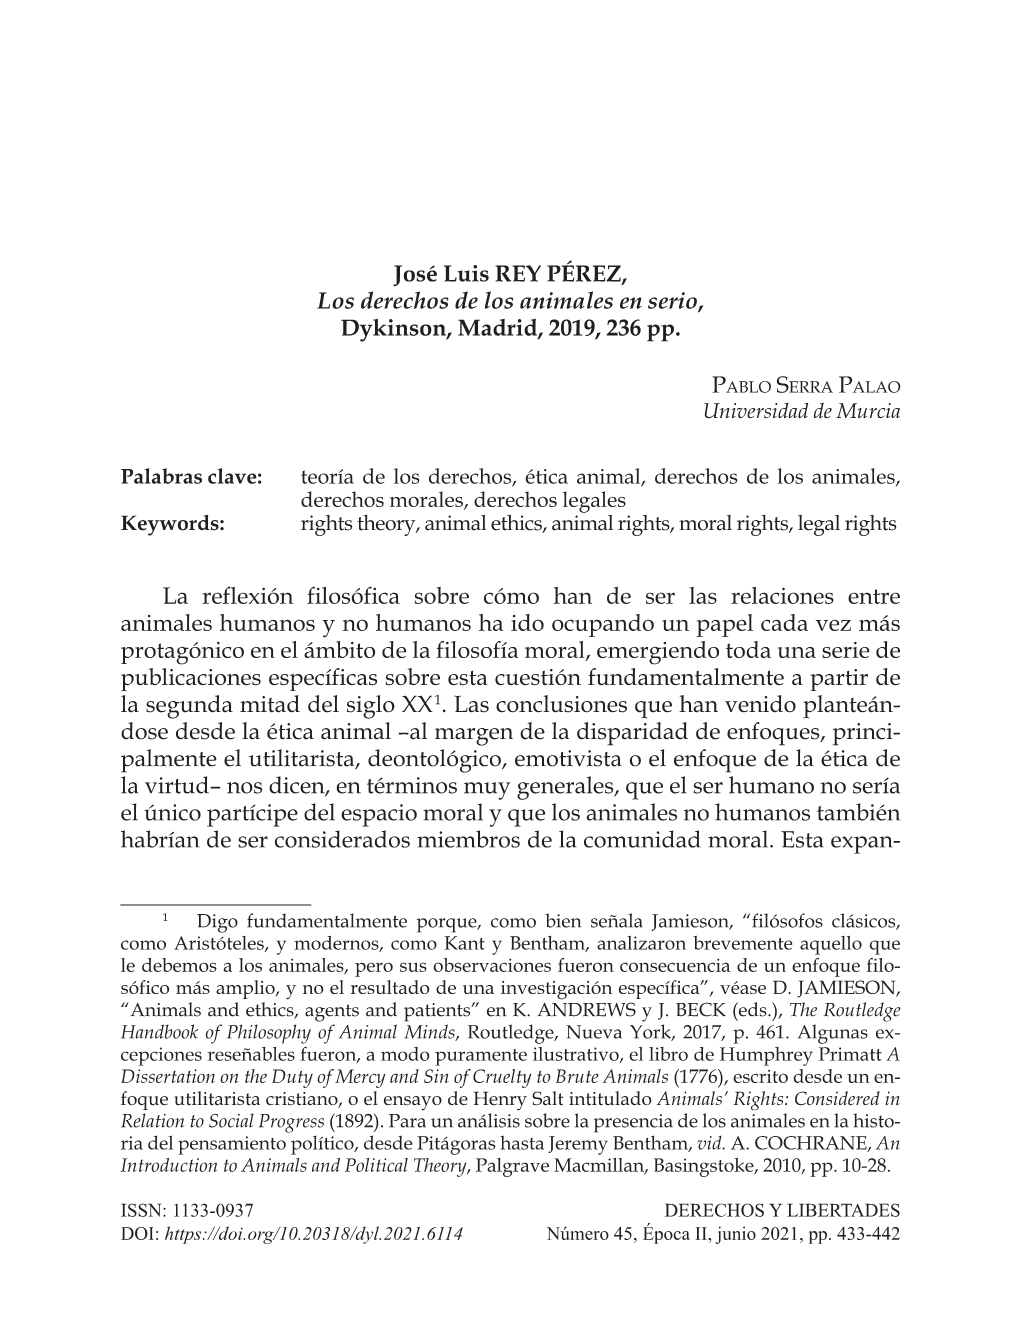 José Luis REY PÉREZ, Los Derechos De Los Animales En Serio, Dykinson, Madrid, 2019, 236 Pp